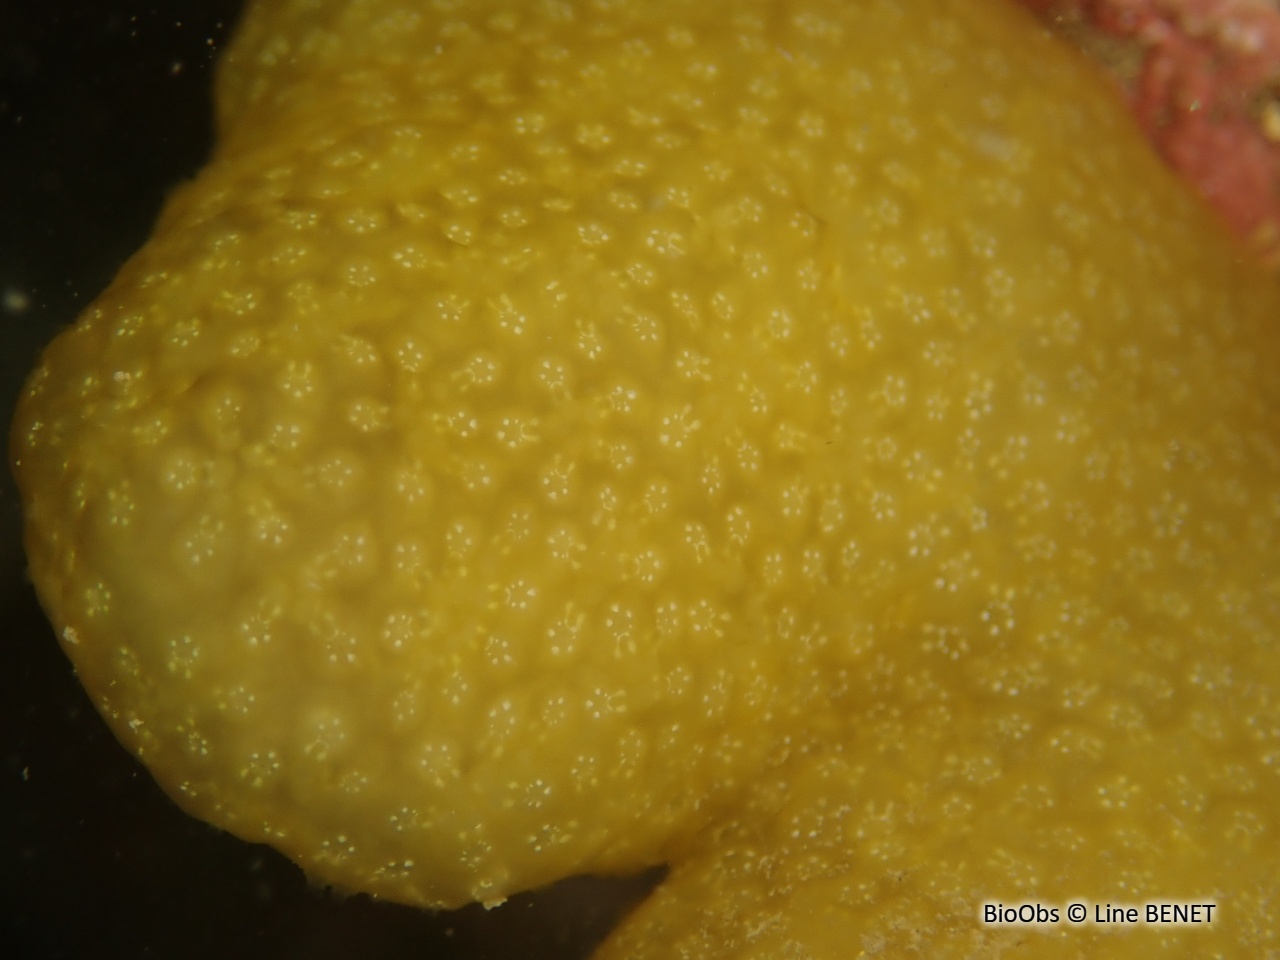 Ascidie globuleuse de Méditerranée - Pseudodistoma obscurum - Line BENET - BioObs